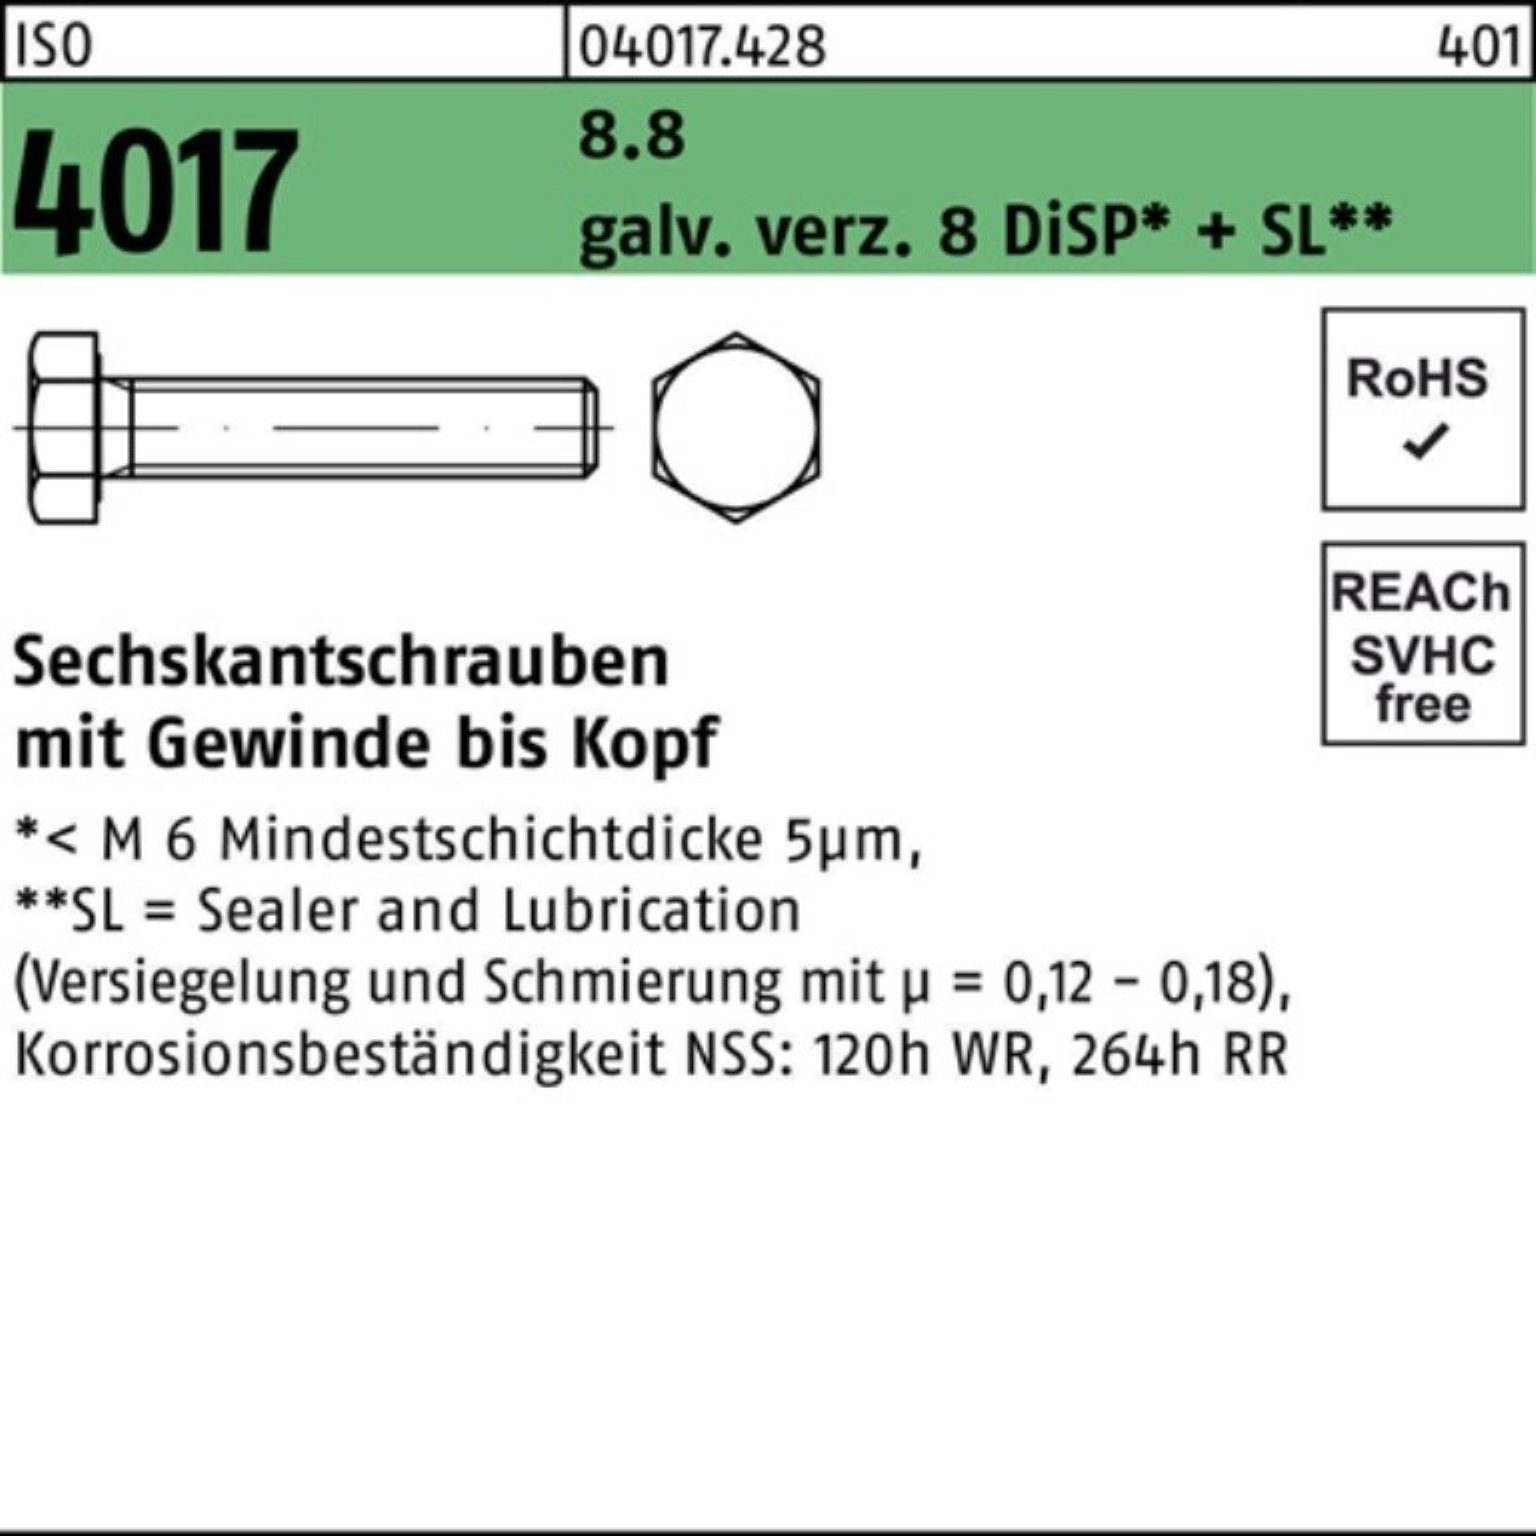 Pack Bufab Sechskantschraube 45 DiSP VG Sechskantschraube 4017 ISO galv.verz. 100er 8.8 8 M14x